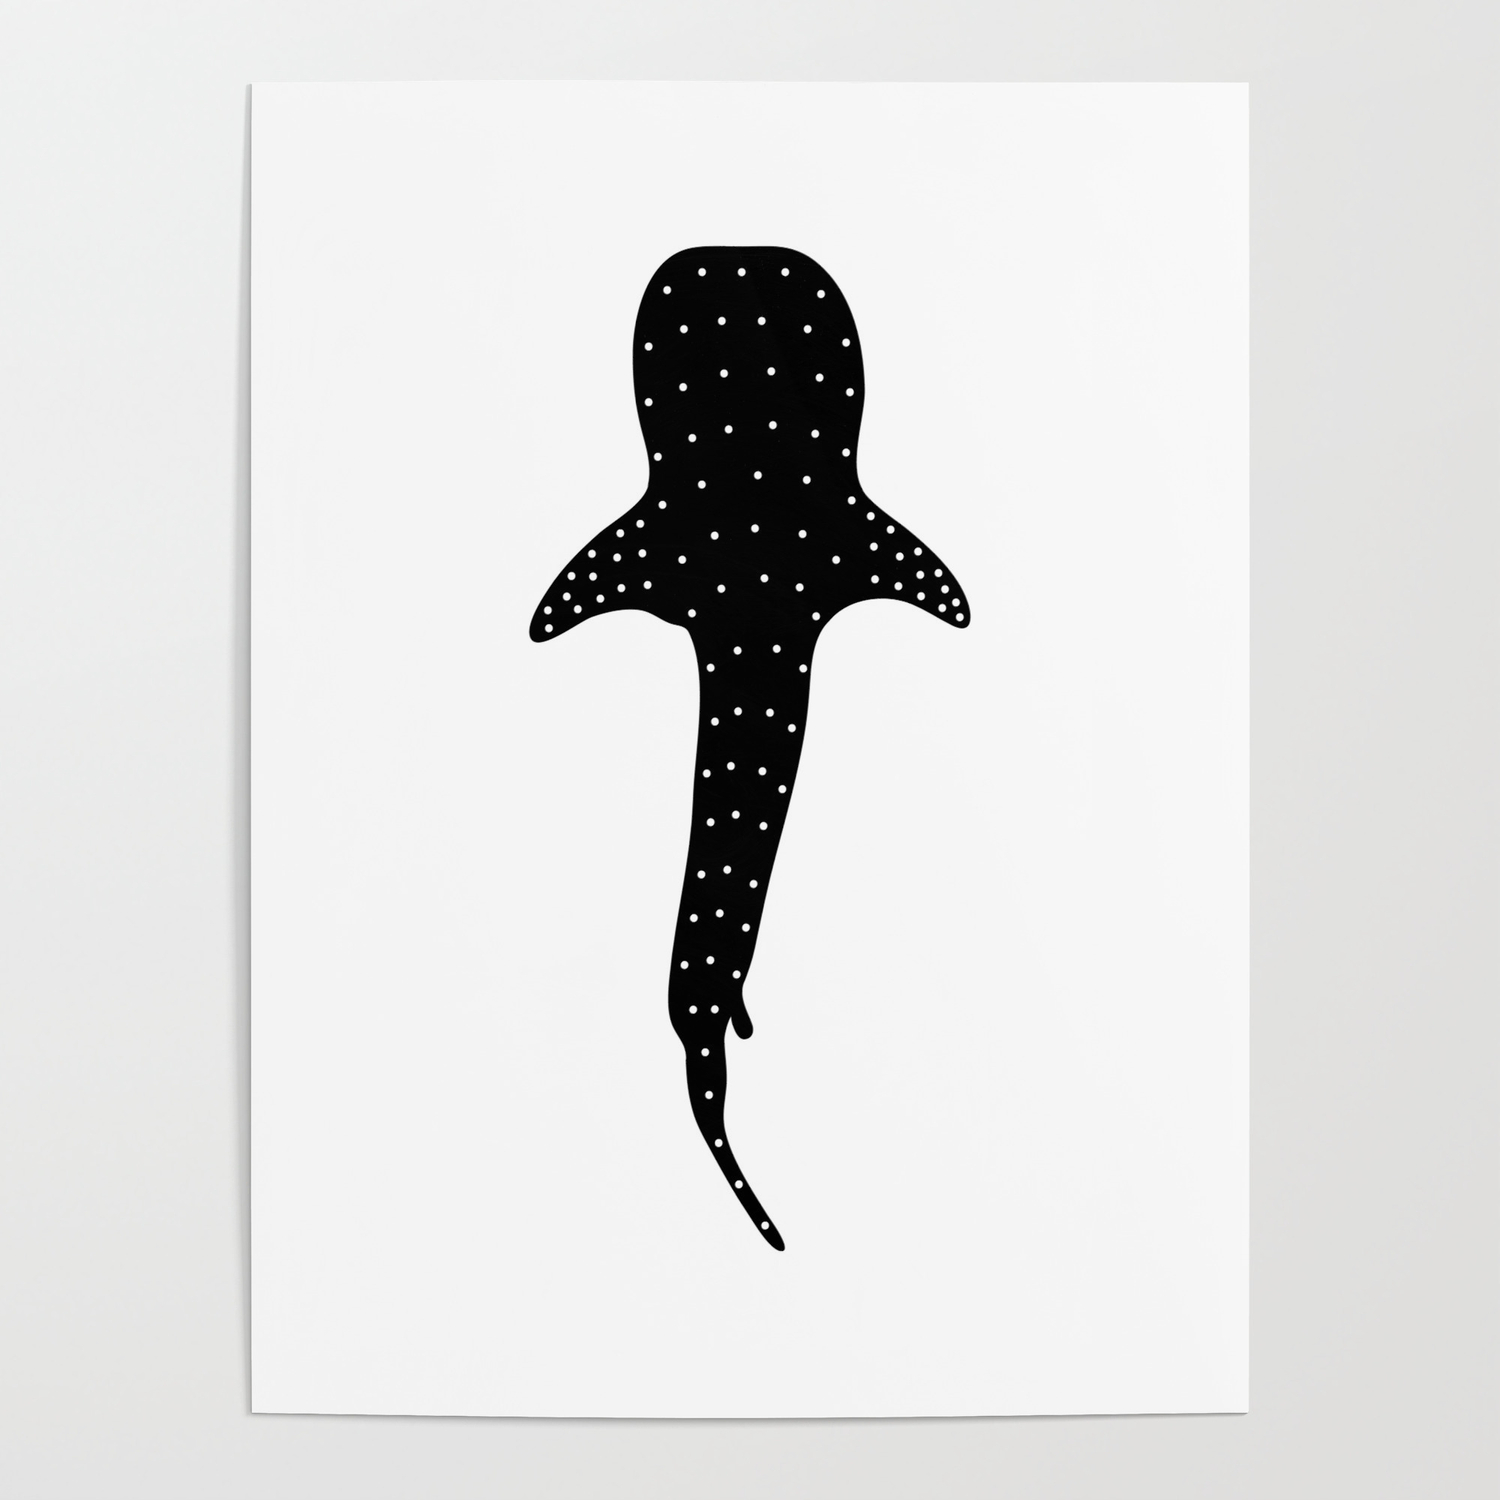 Китовая акула рисунок